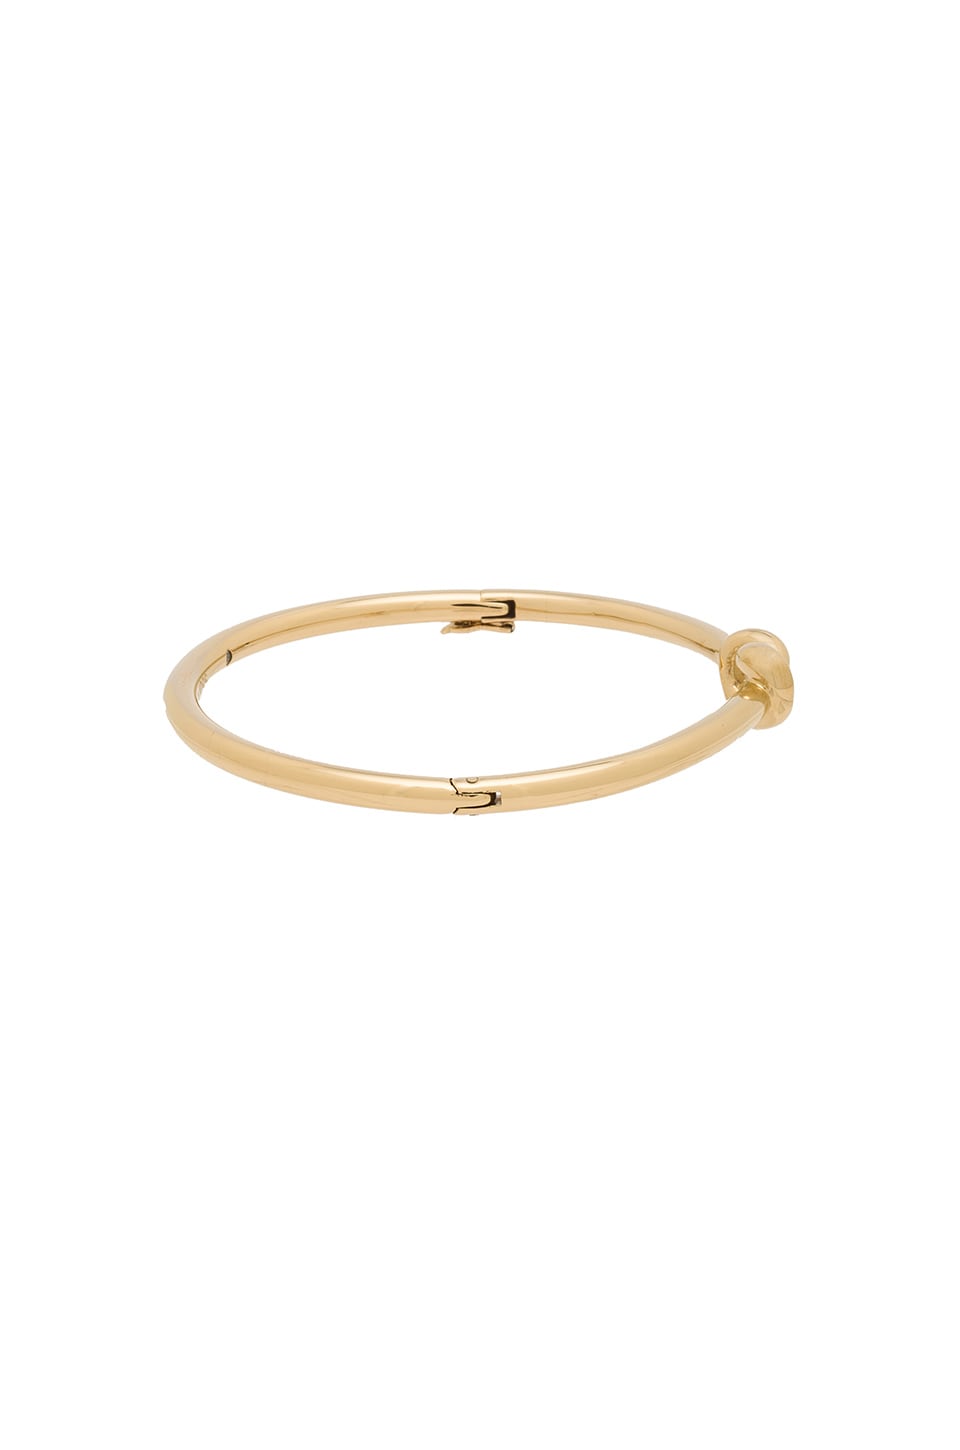 Michael Kors Knot Hinge Bracelet in Gold | REVOLVE